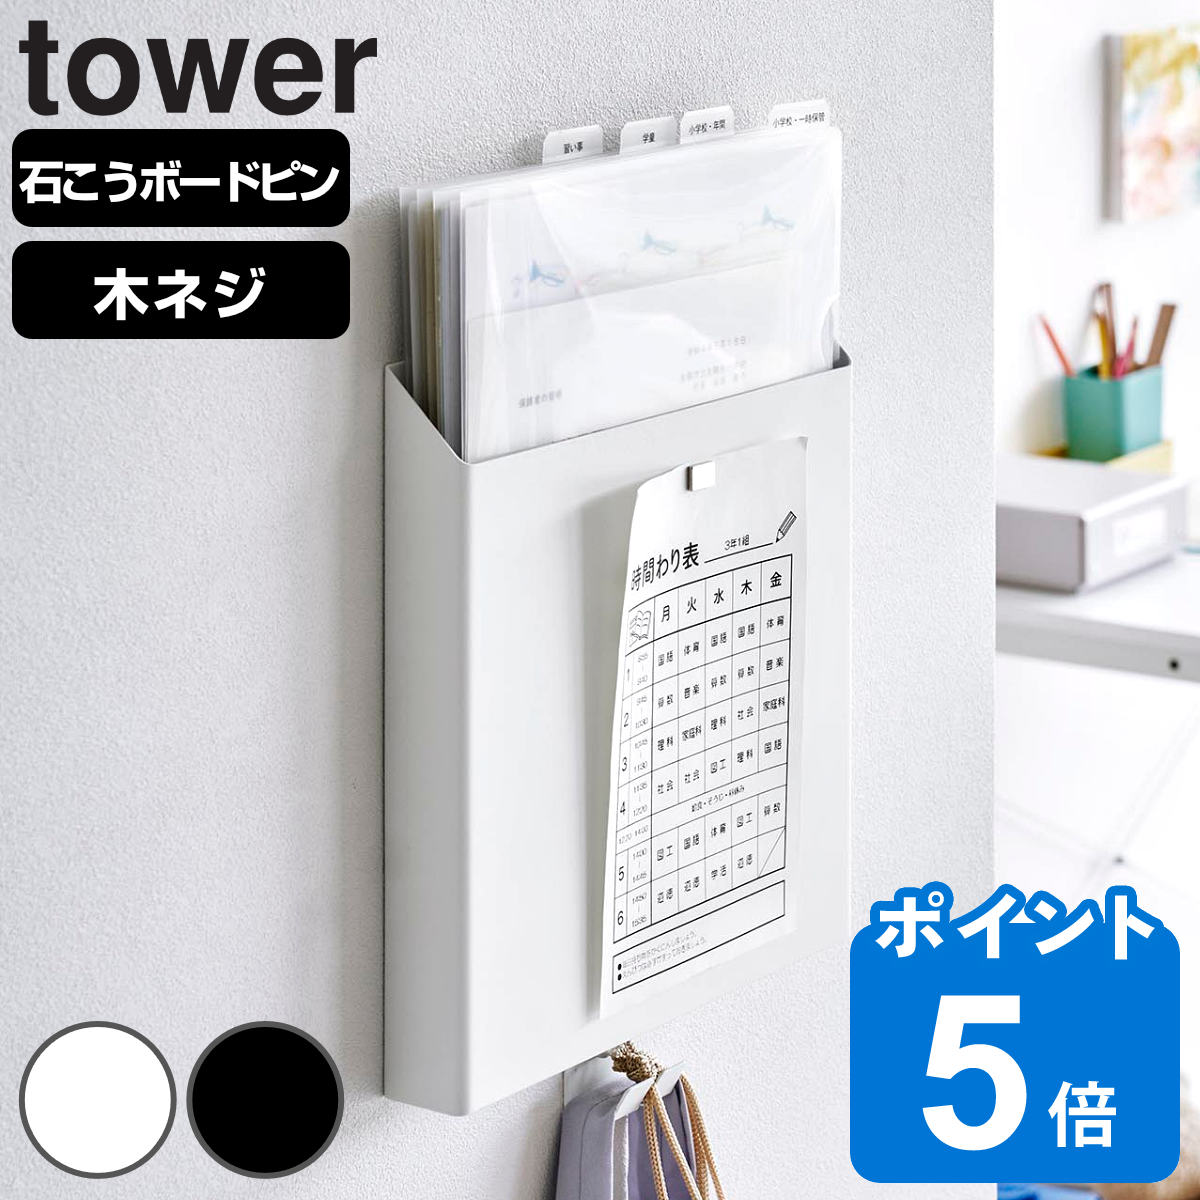 山崎実業 tower 石こうボード壁対応プリント収納ホルダー タワー